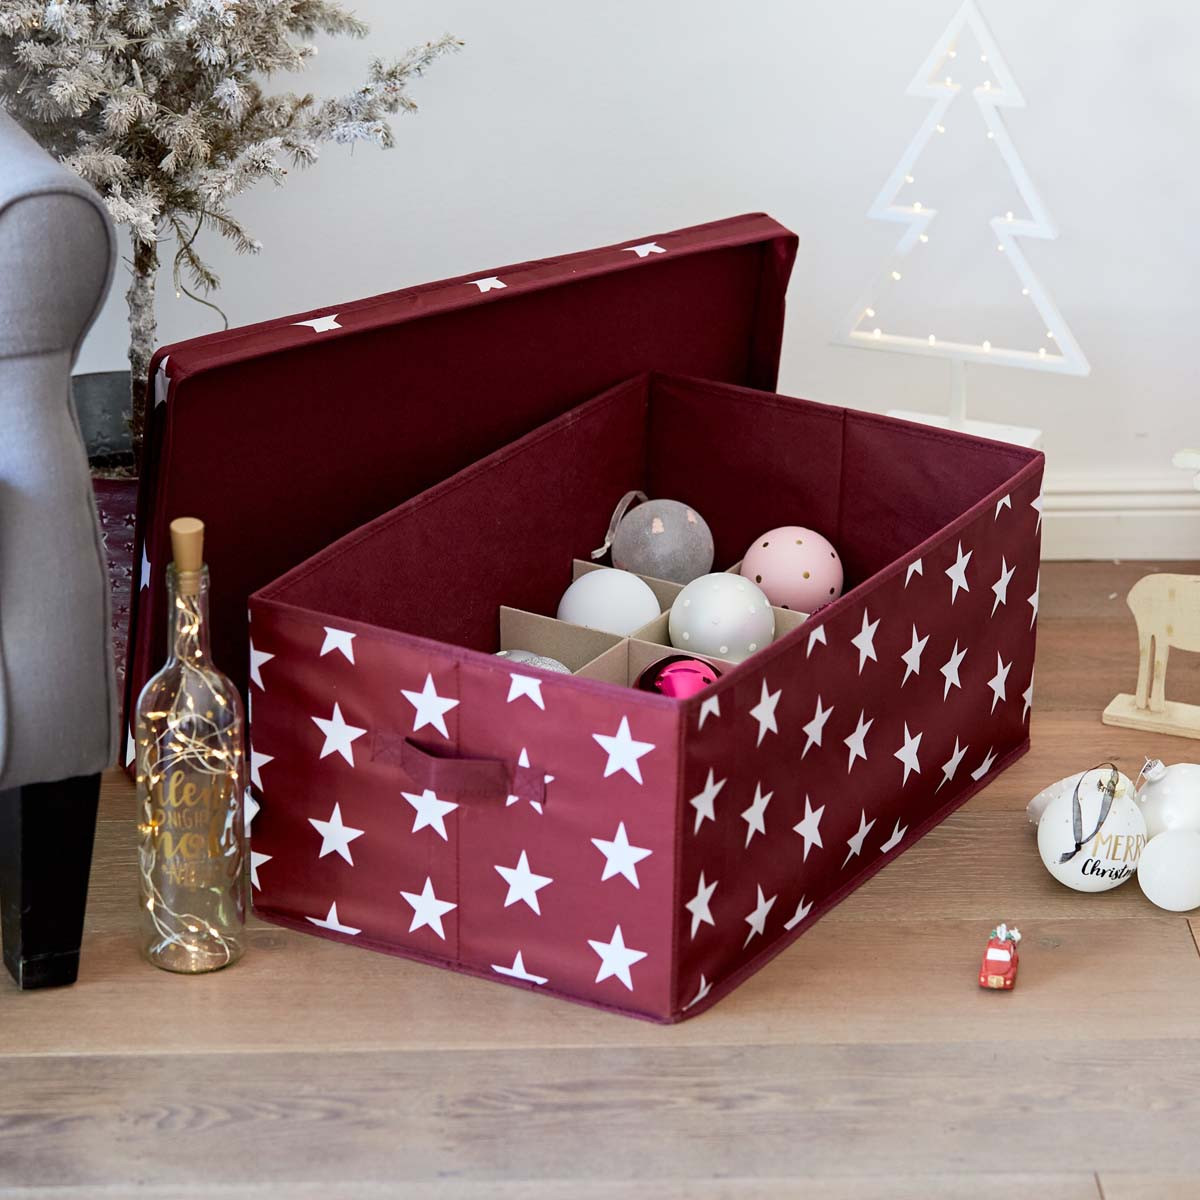 Boîte de rangement en tissu pour décorations de Noël - Bordeaux à